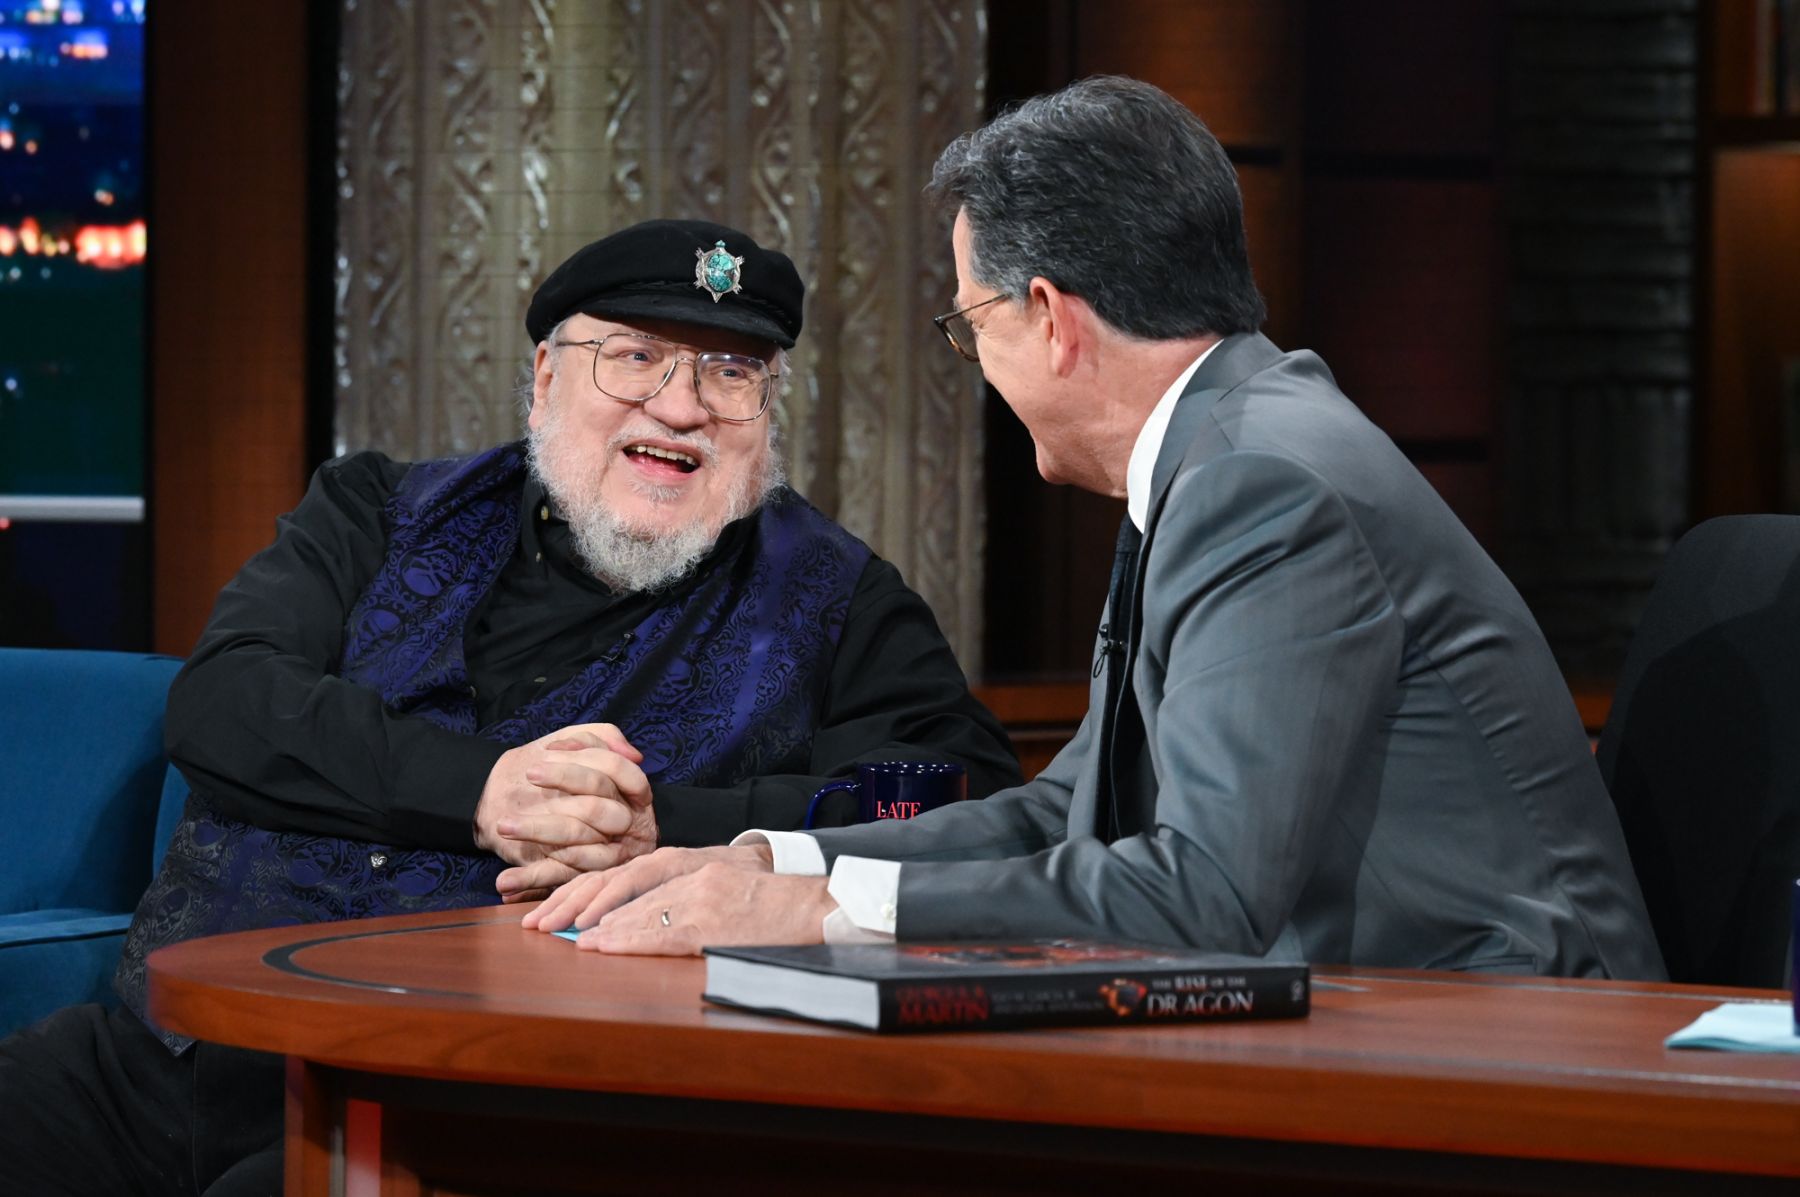 Martin en el programa televisivo The Late Show, en una entrevista reciente con Stephen Colbert.